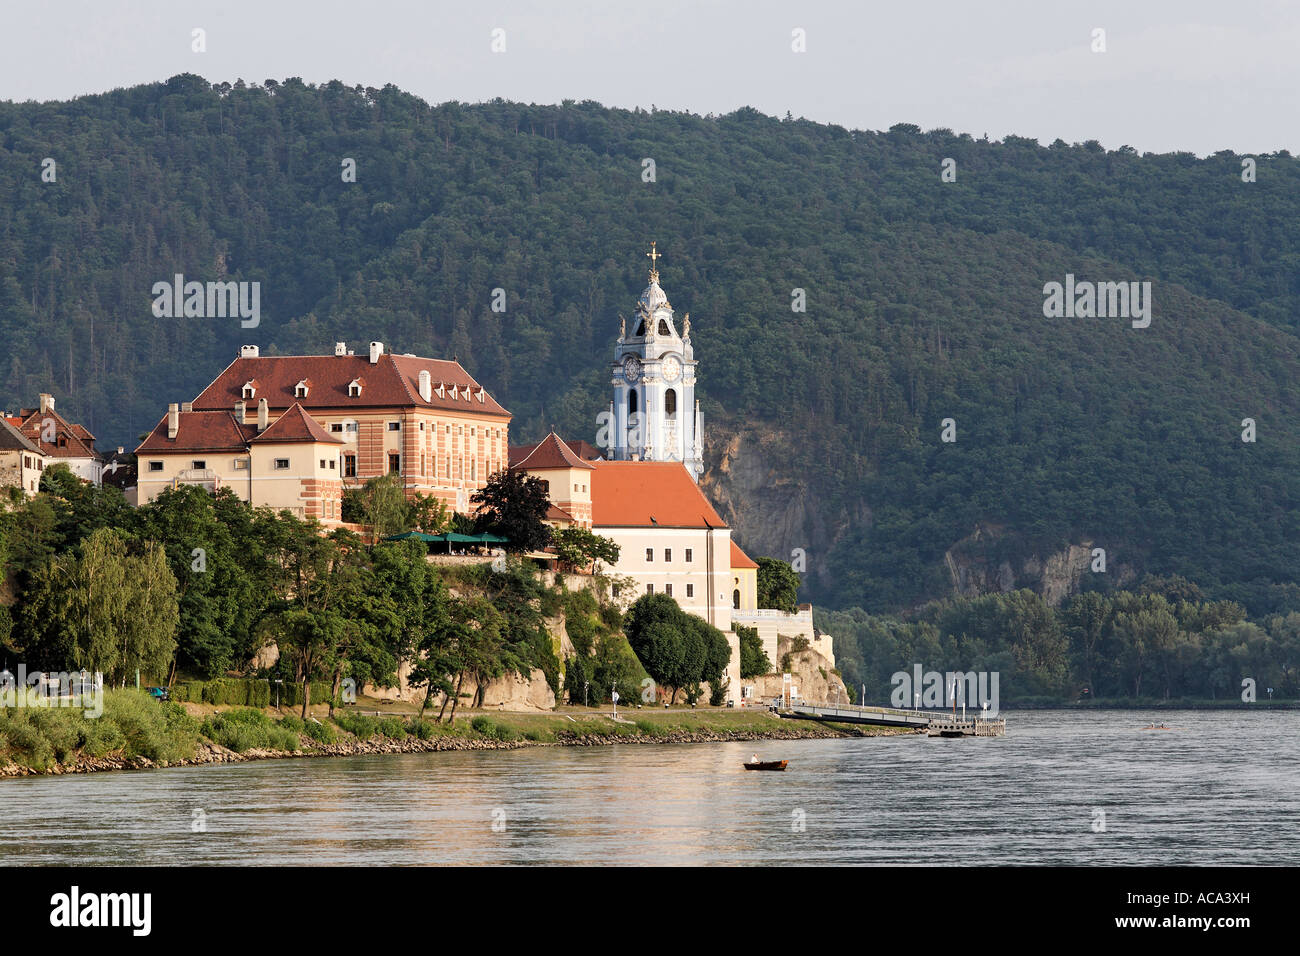 View of Duernstein and Danube, Wachau, Lower Austria, Austria Stock Photo